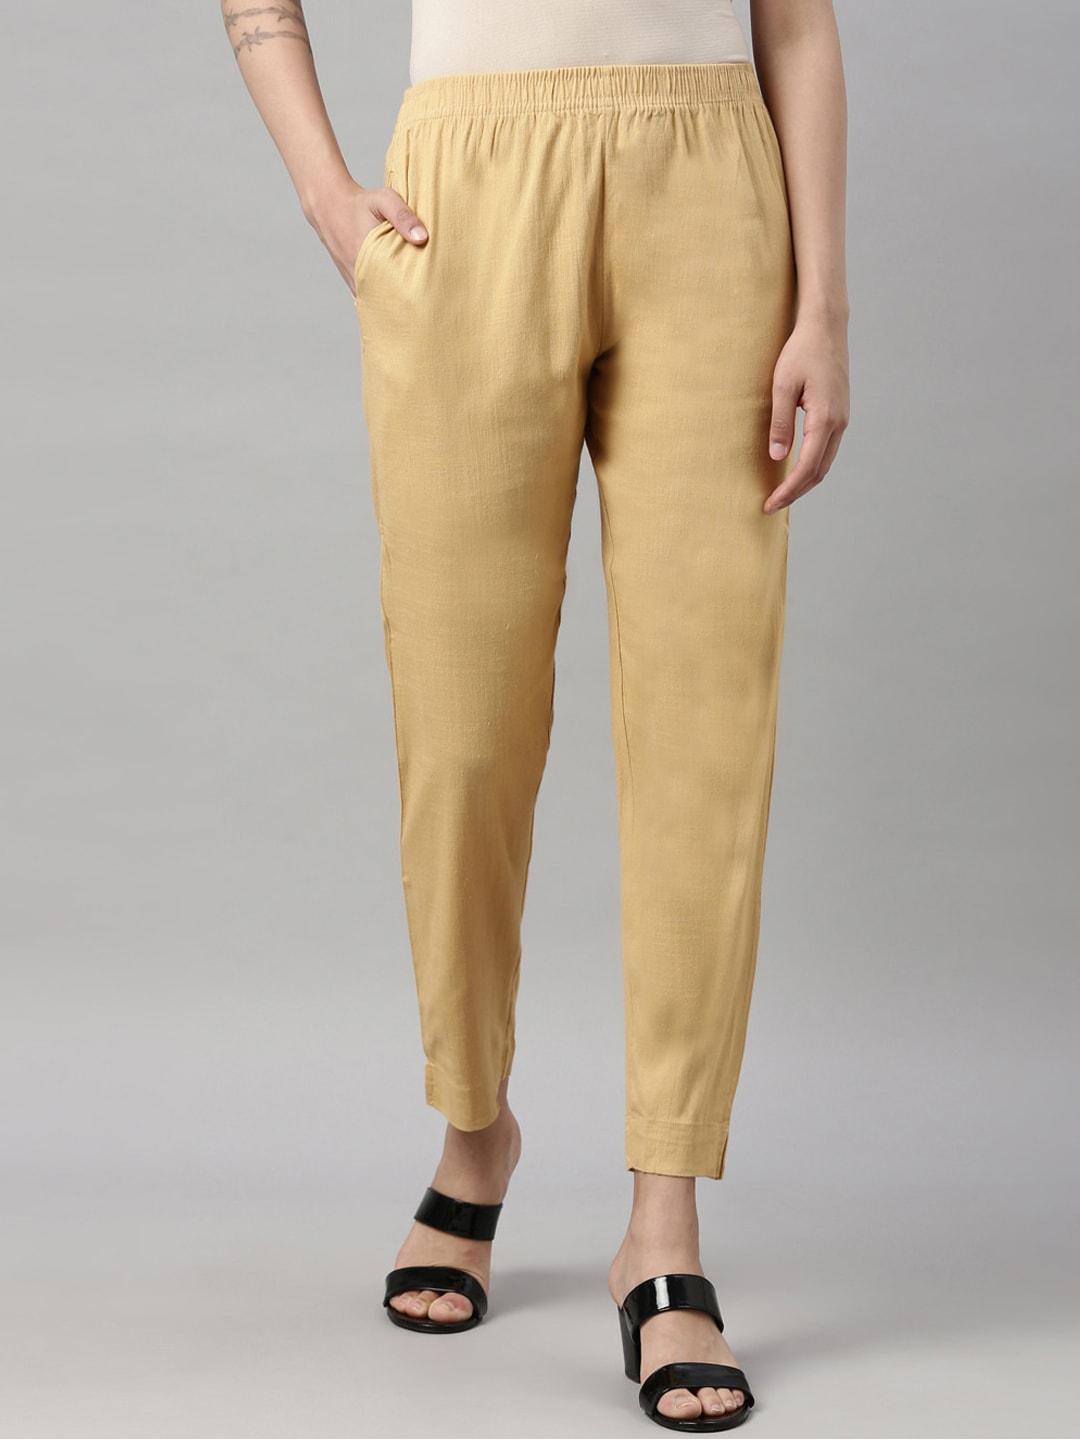 goldstroms-women-beige-cigarette-trousers